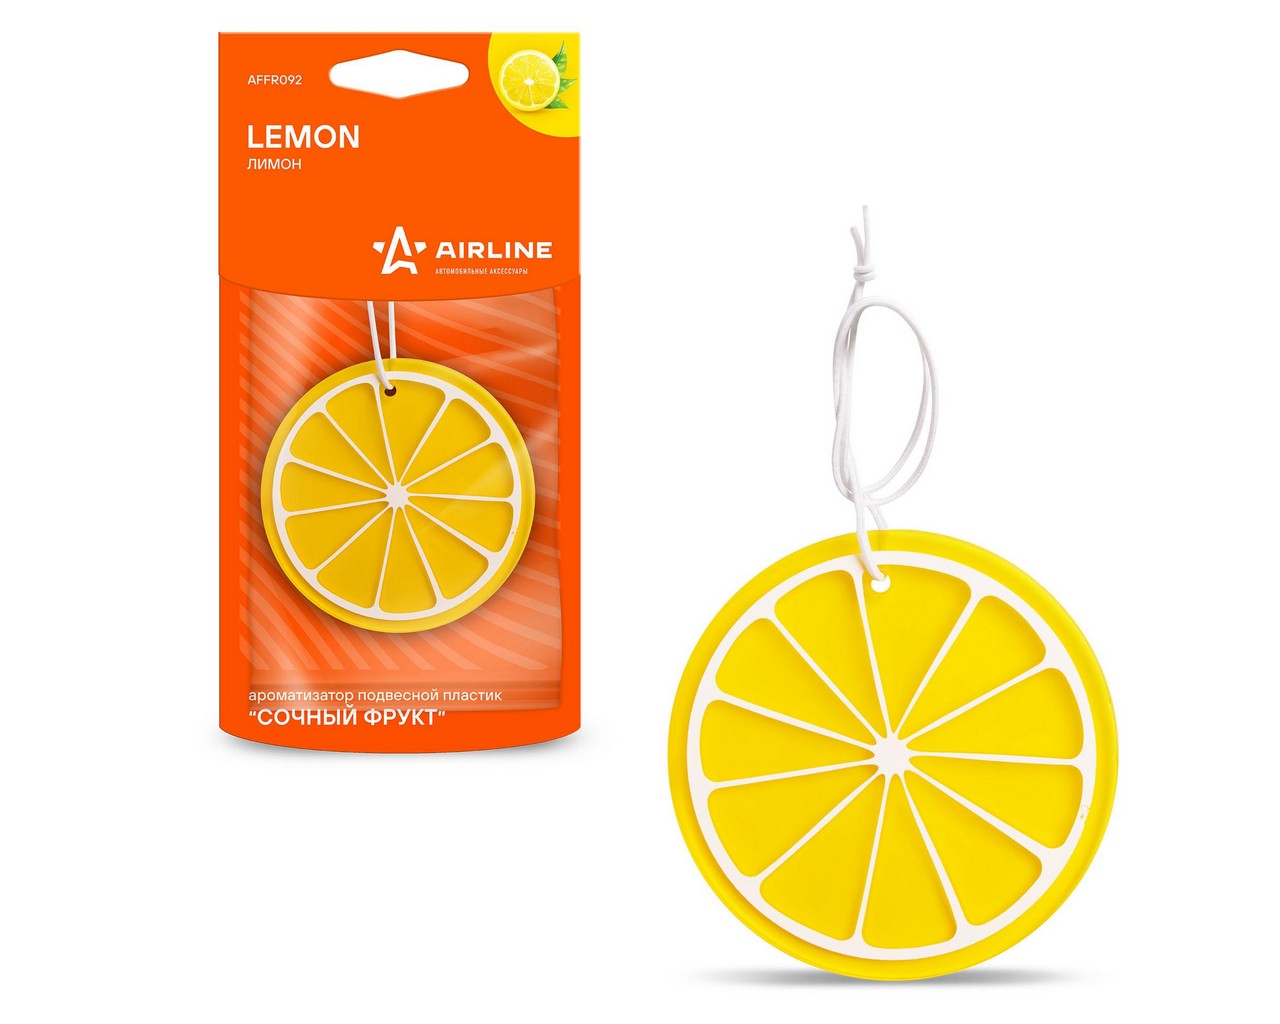 Ароматизатор подвесной (пластик сочный фрукт) лимон (AIRLINE) фото 1